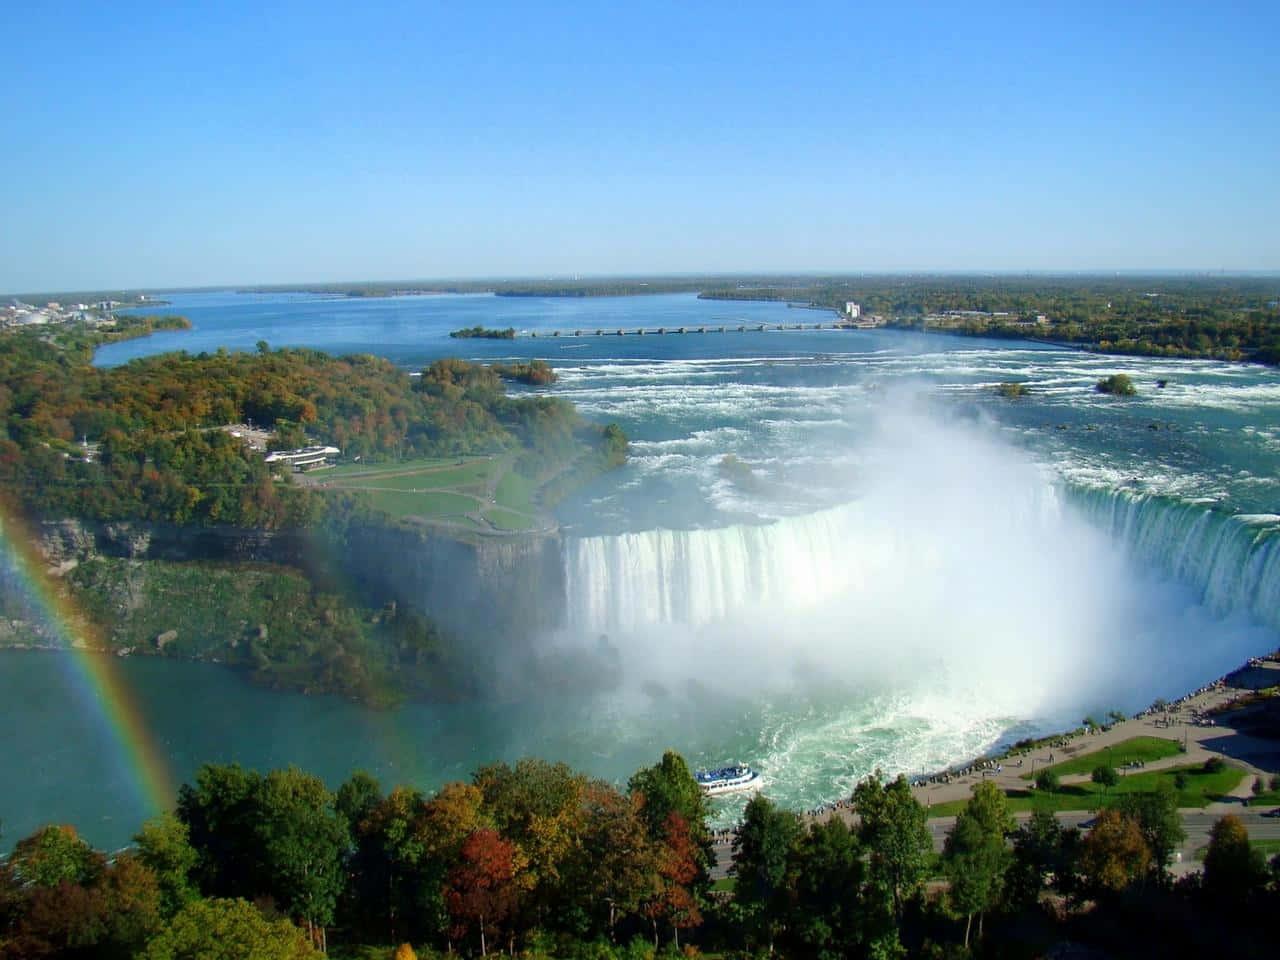 Genießensie Die Schönheit Und Die Entspannte Atmosphäre Des Prächtigen 720p Niagara Falls.